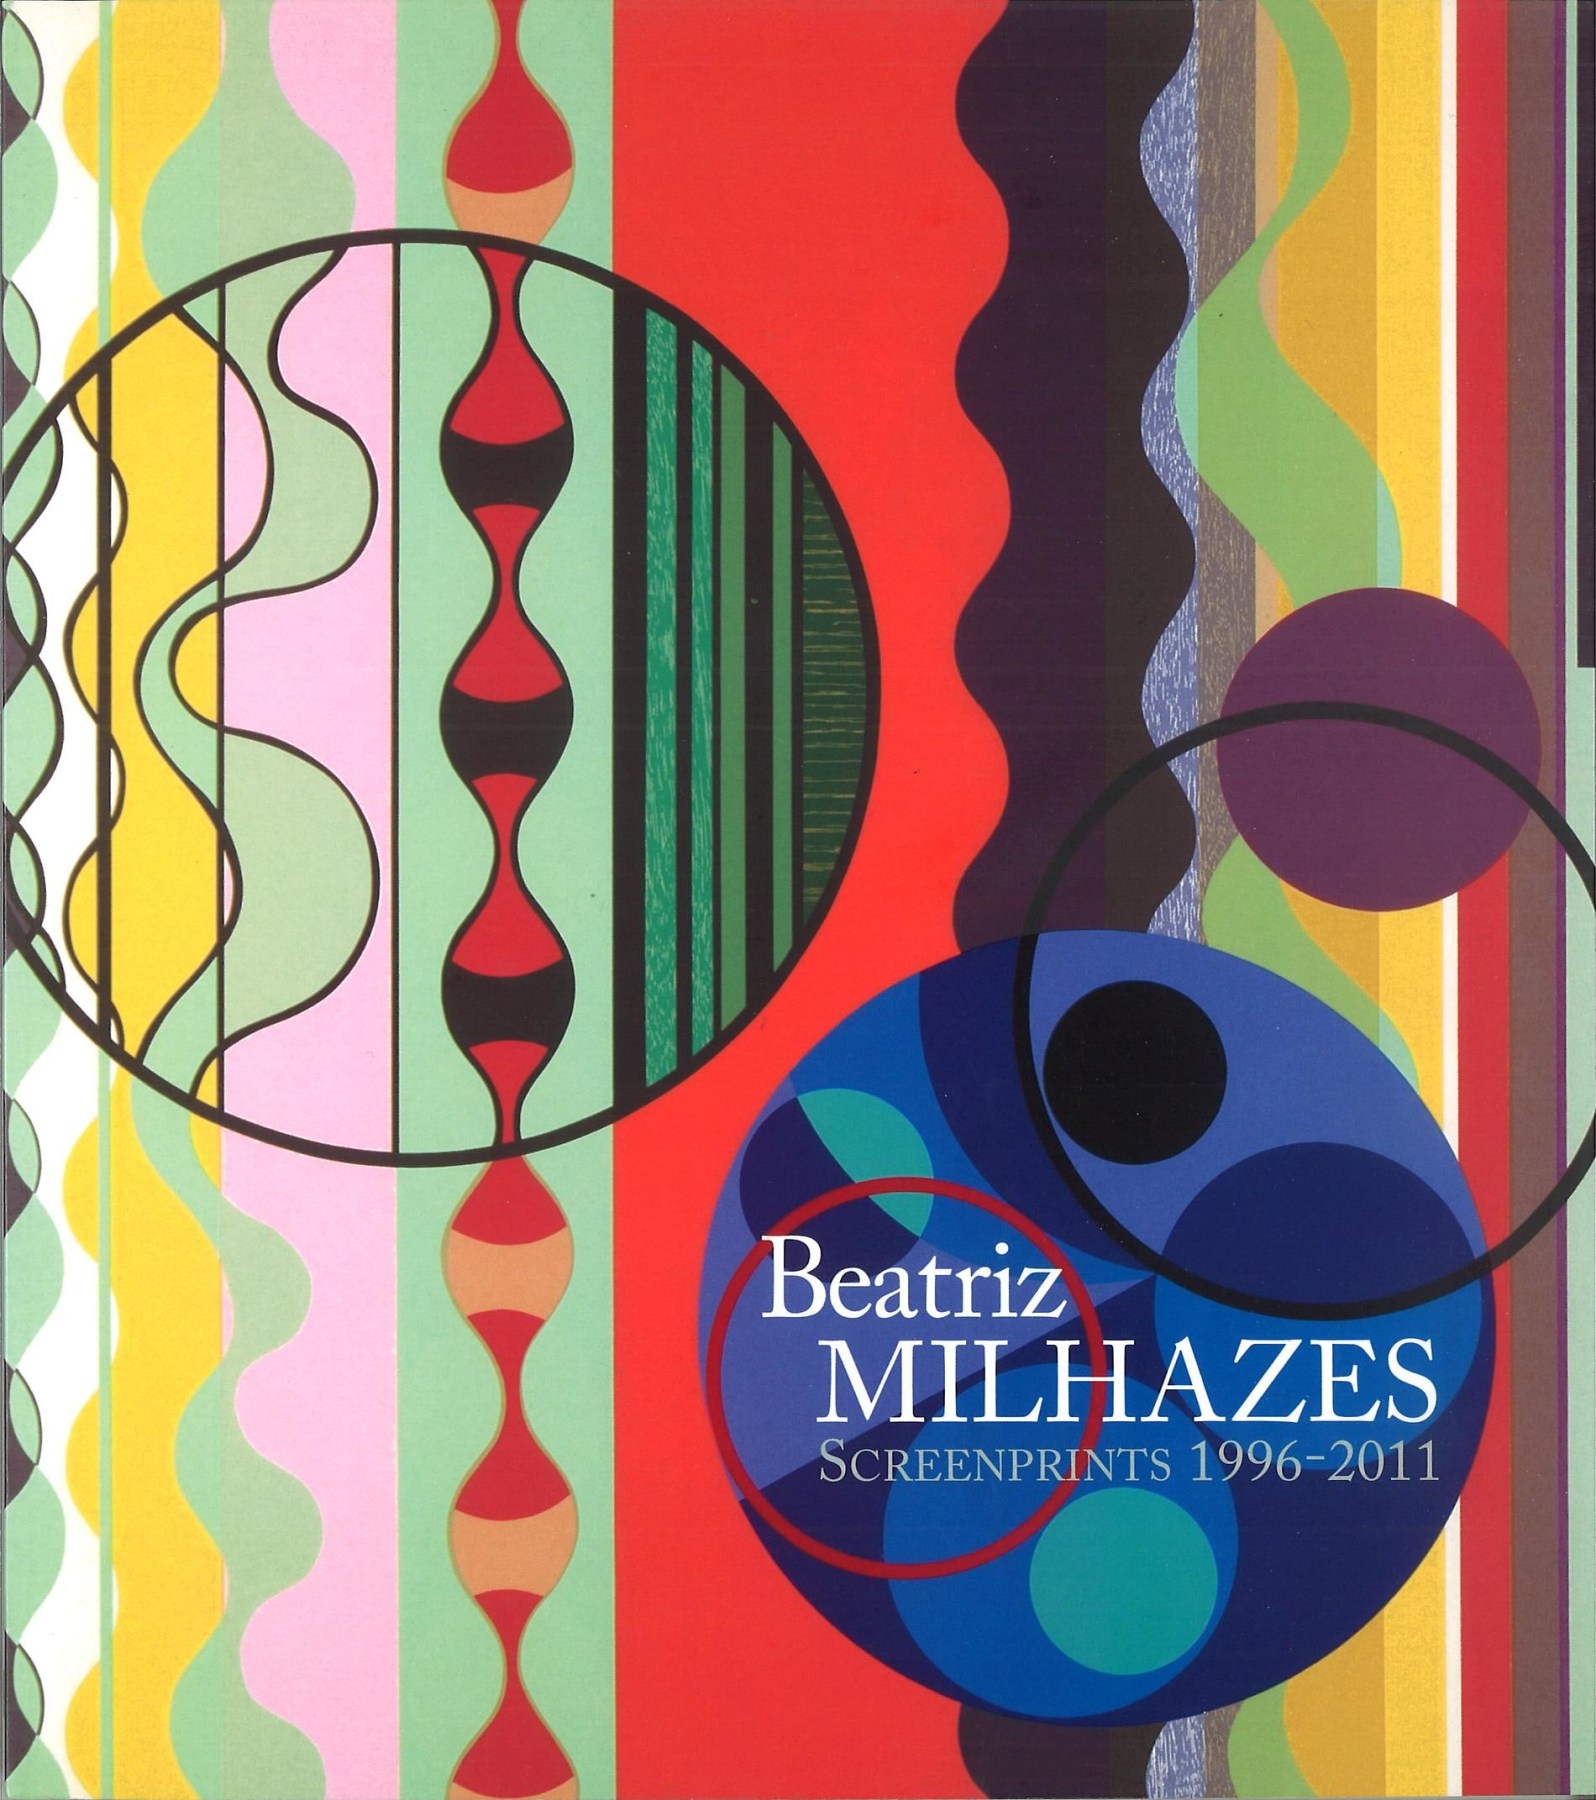 Beatriz Milhazes: Screenprints 1996-2011